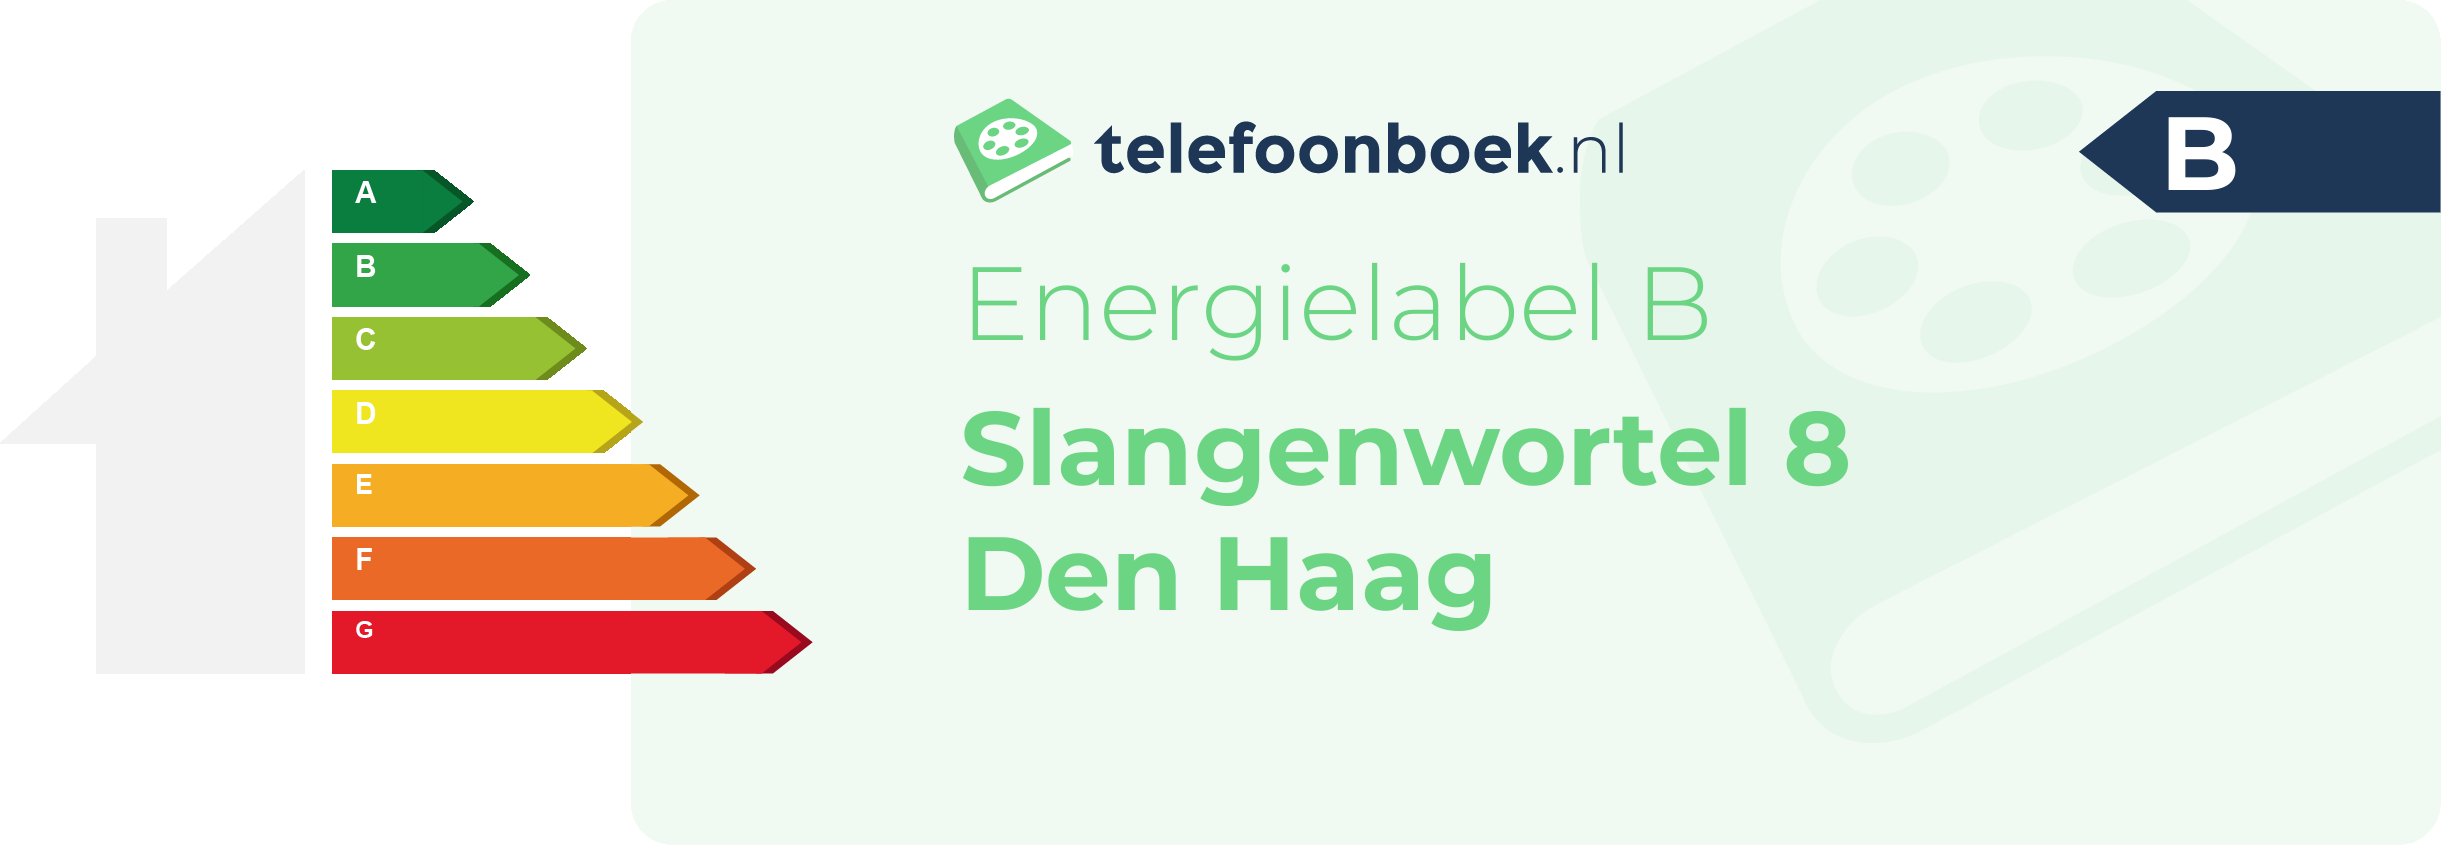 Energielabel Slangenwortel 8 Den Haag